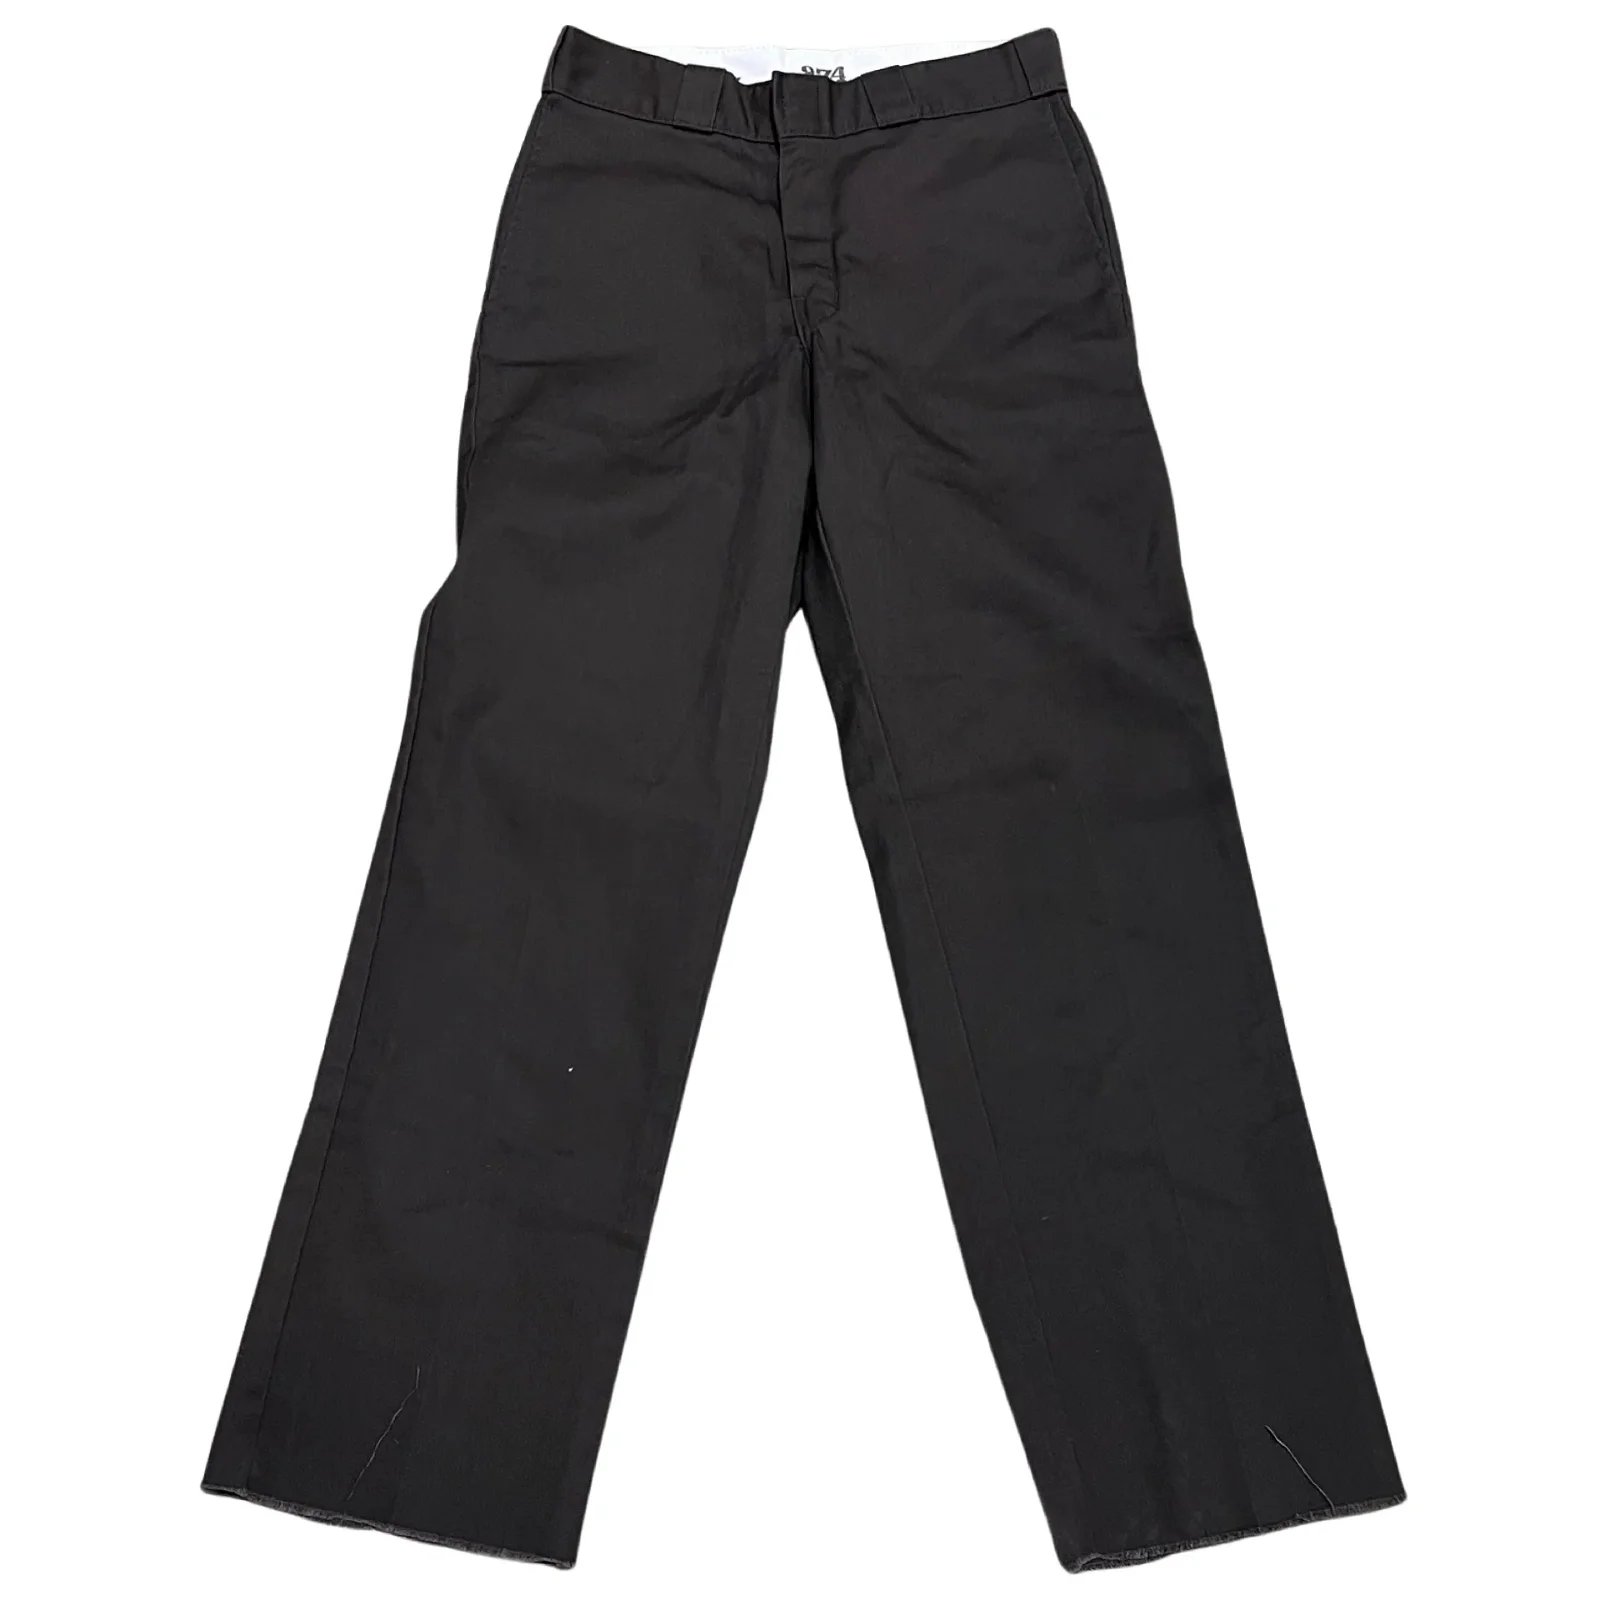 Image of Vintage Dickies Workwear Pants (28x31)